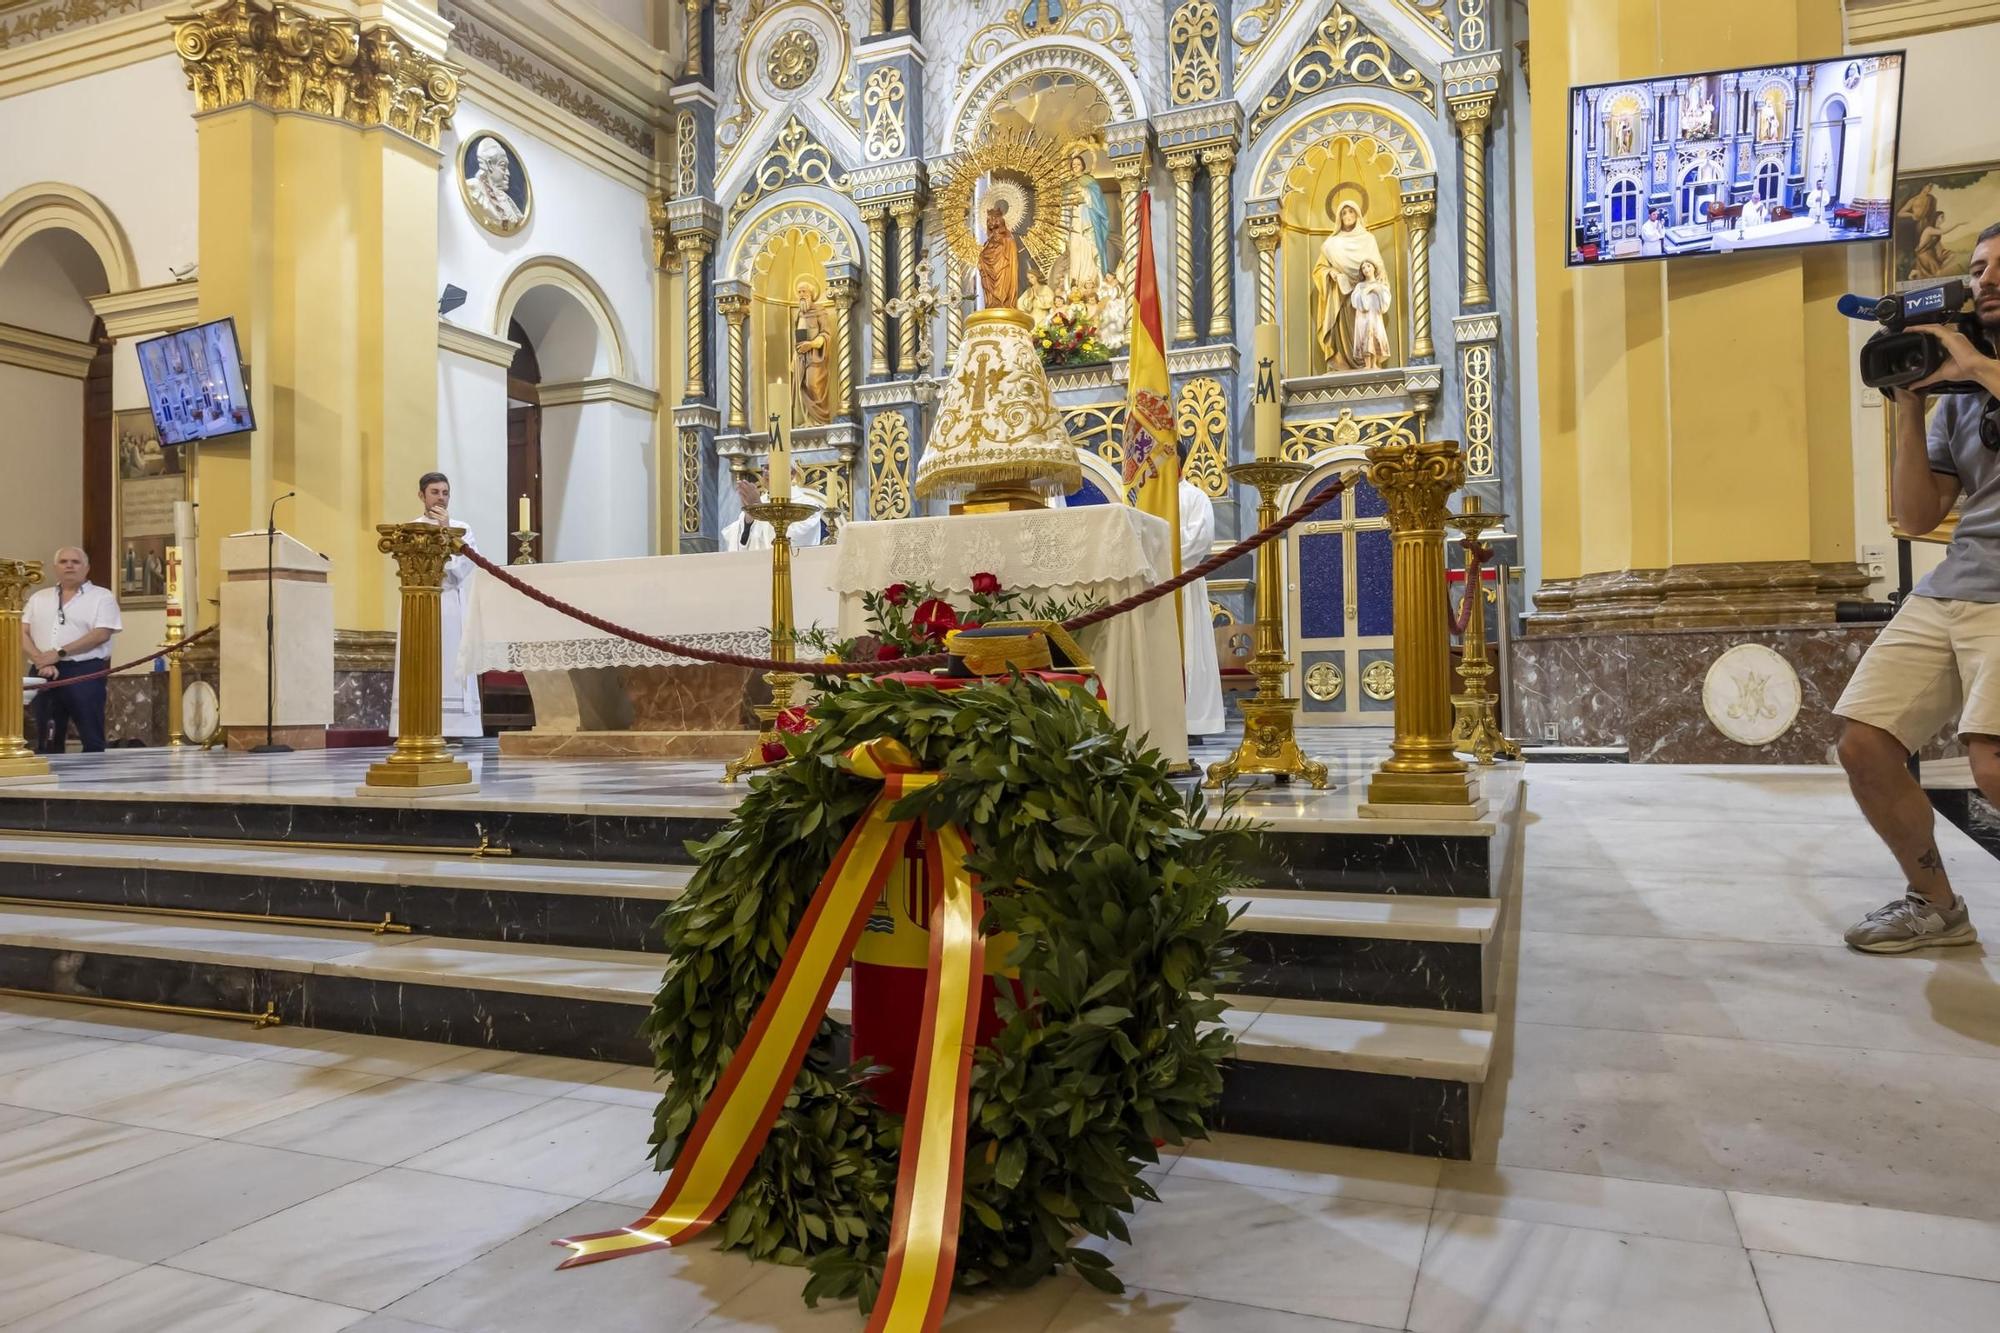 Misa en honor a la patrona la Virgen del Pilar y acto castrense por la Fiesta Nacional de la Guardia Civil de Torrevieja